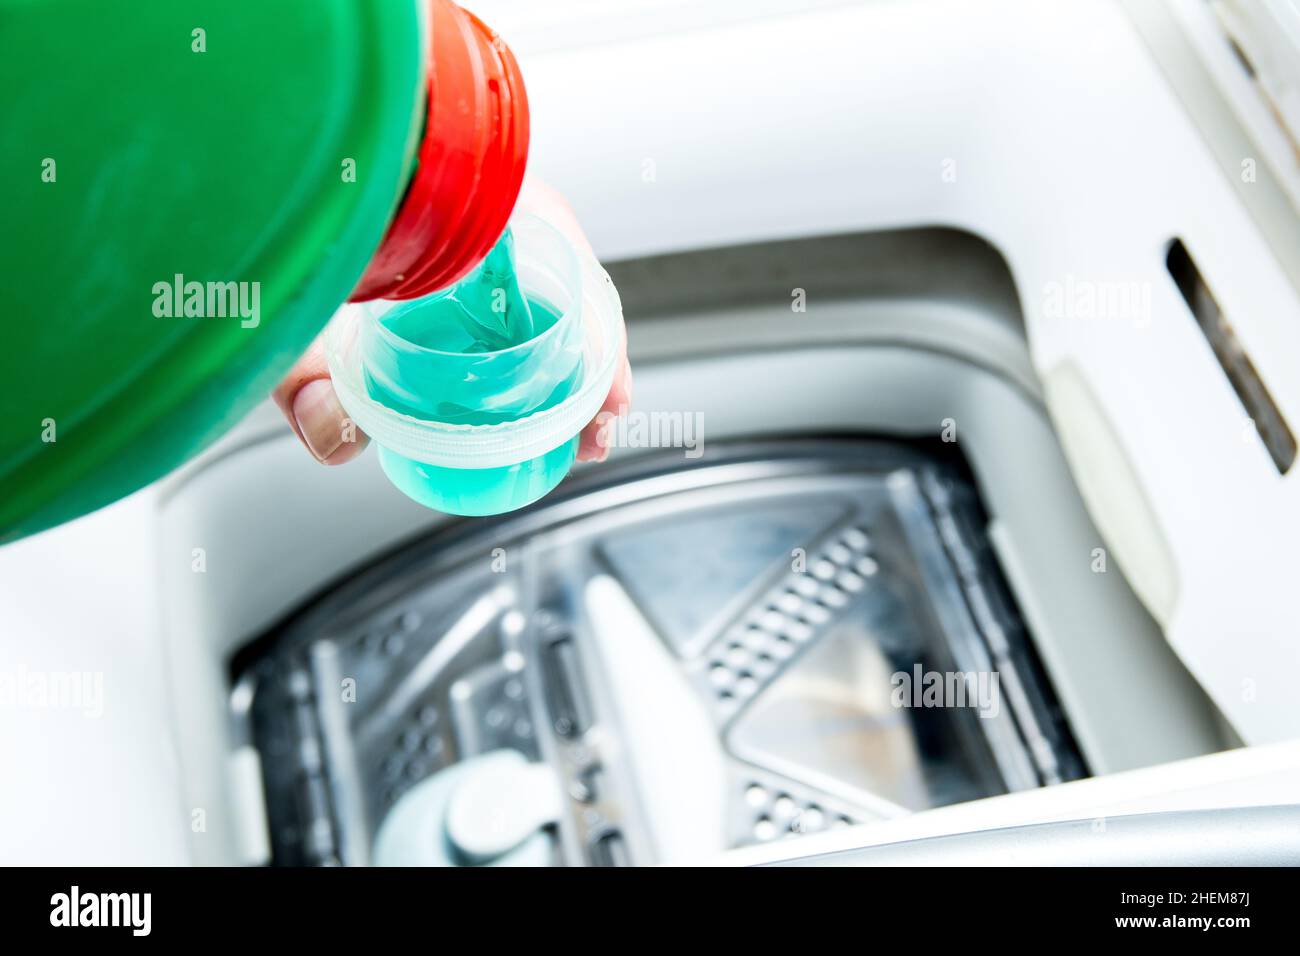 Flüssiges Reinigungsmittel aus einer grünen Flasche wird in die  Waschmaschine gegossen. Vorbereitung zum Waschen, Messbecher für  Waschpulver Stockfotografie - Alamy